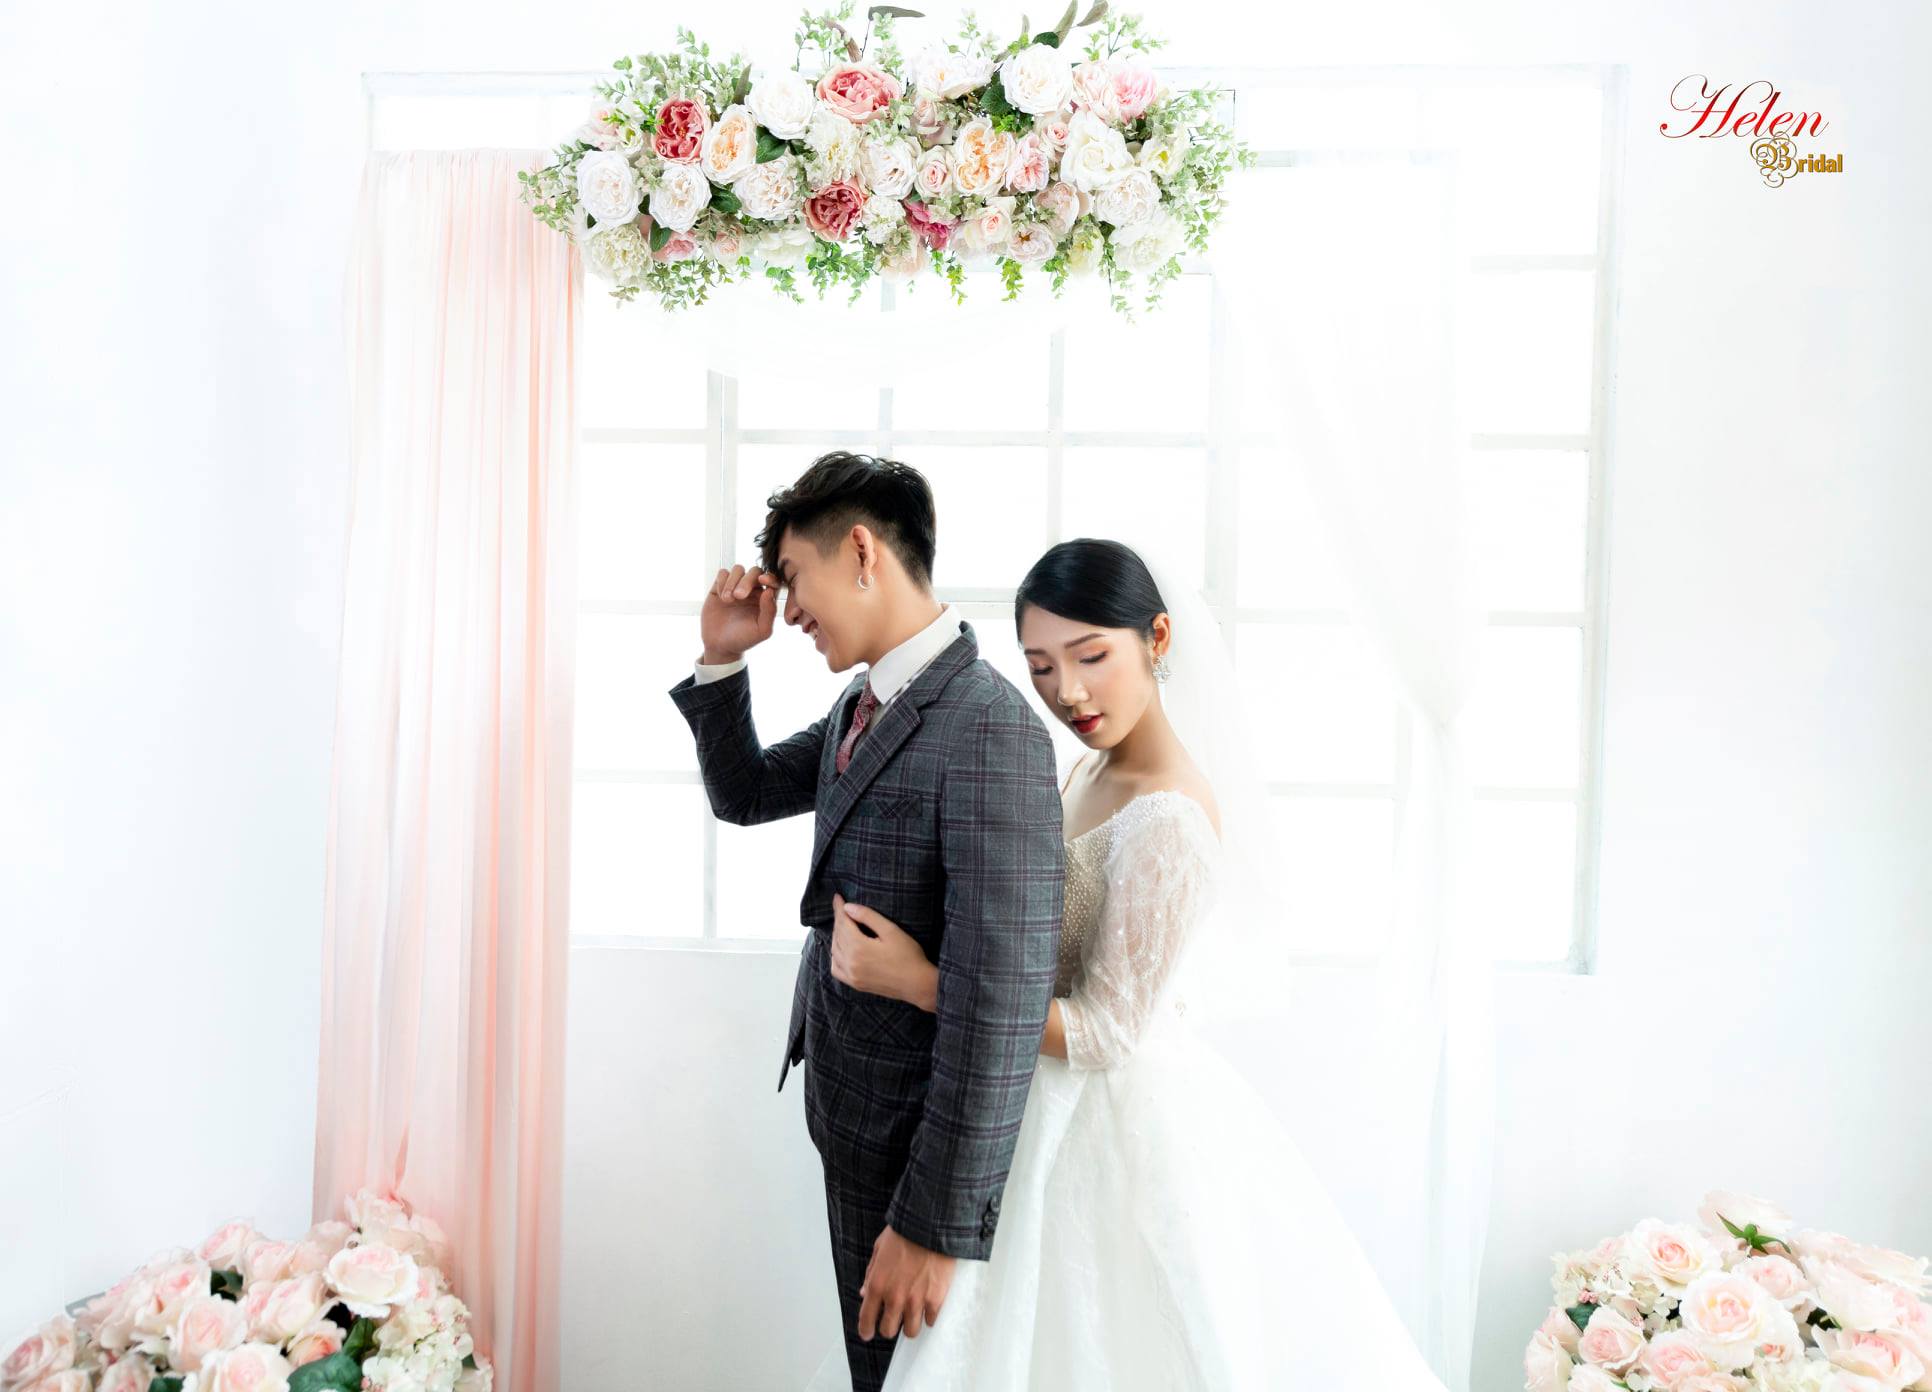 CHỤP HÌNH CƯỚI TẠI STUDIO THEO PHONG CÁCH HÀN QUỐC - chụp hình cưới studio Hàn Quốc: Bạn muốn có một bộ ảnh cưới thật hoàn mỹ theo phong cách Hàn Quốc? Với dàn chuyên gia làm việc tại chúng tôi, bạn sẽ có tất cả những gì mình cần để chụp hình cưới đẹp nhất và với phong cách Hàn Quốc. Chụp hình cưới tại studio Hàn Quốc sẽ là một trải nghiệm đáng nhớ và thật đẹp trong ngày cưới của bạn.